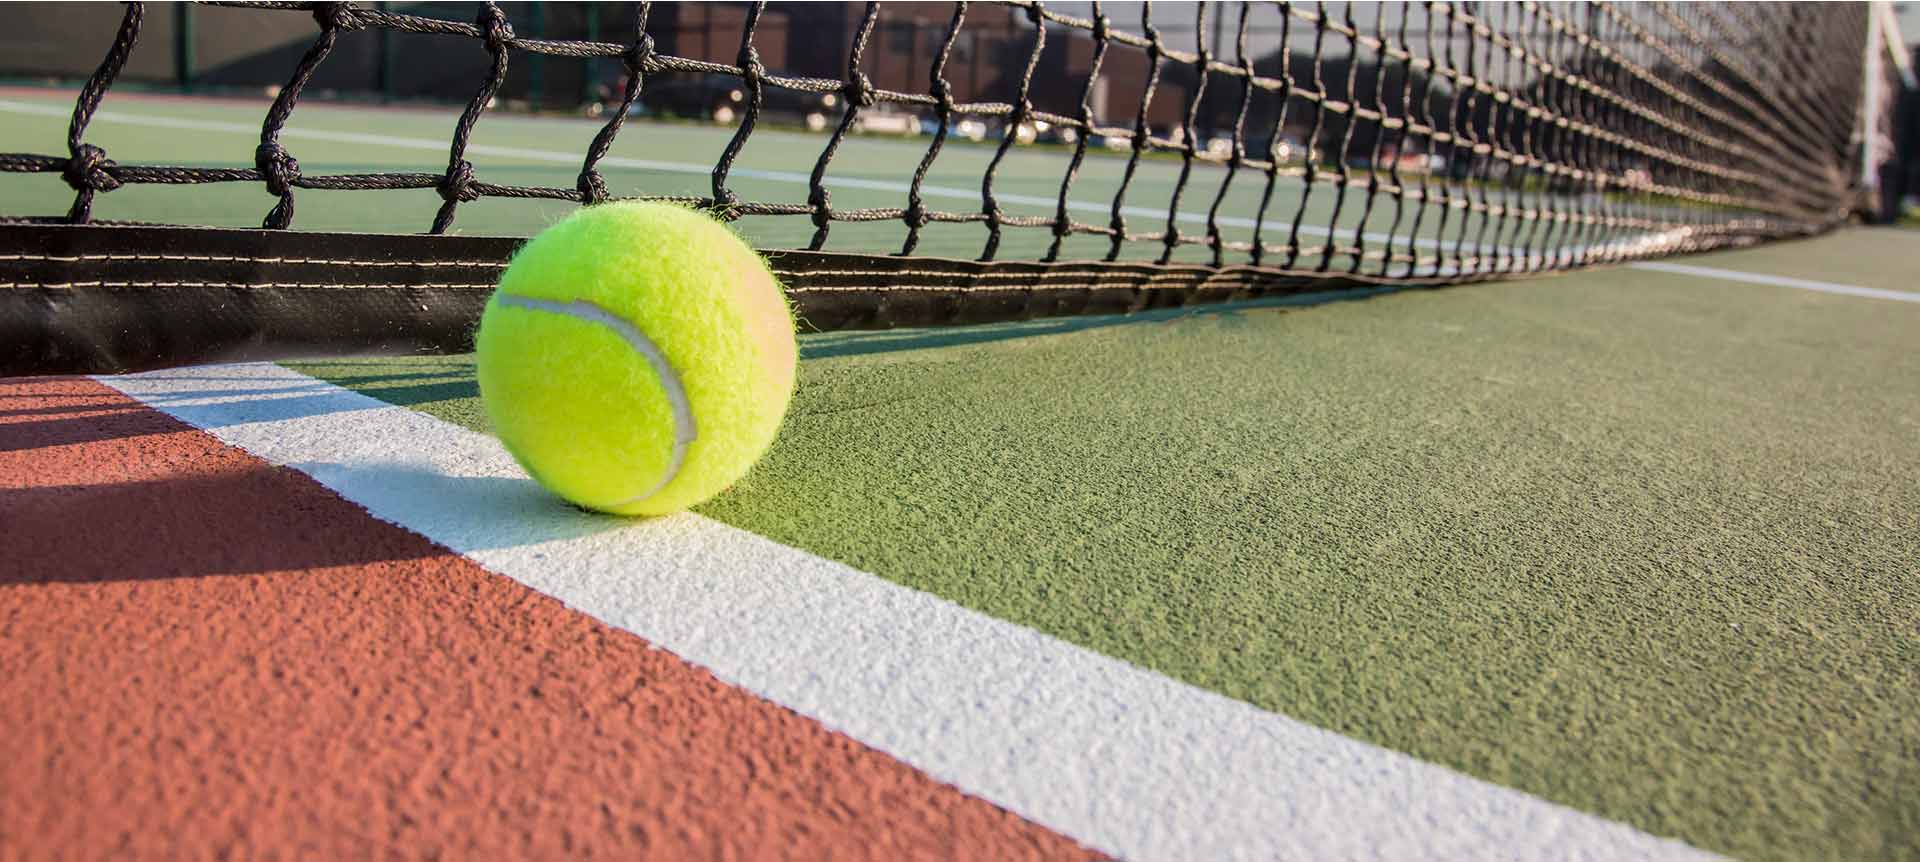 Узнайте о достижениях теннисного корта